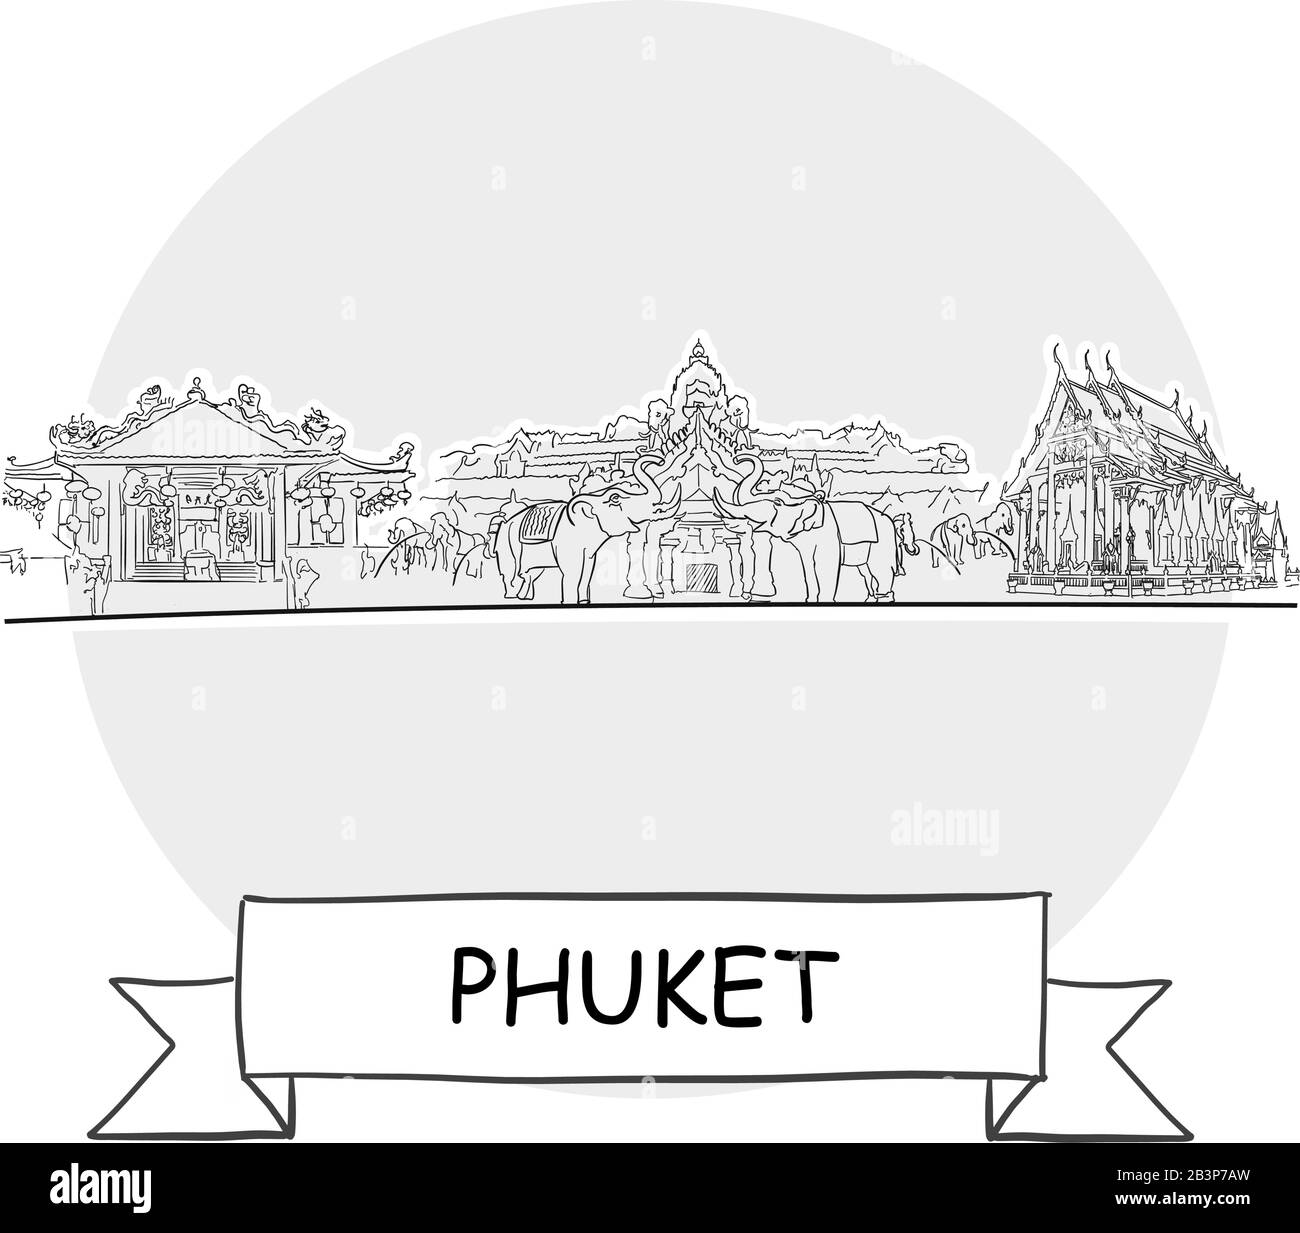 Panneau Vectoriel Phuket Cityscape. Illustration d'un dessin au trait avec ruban et titre. Illustration de Vecteur